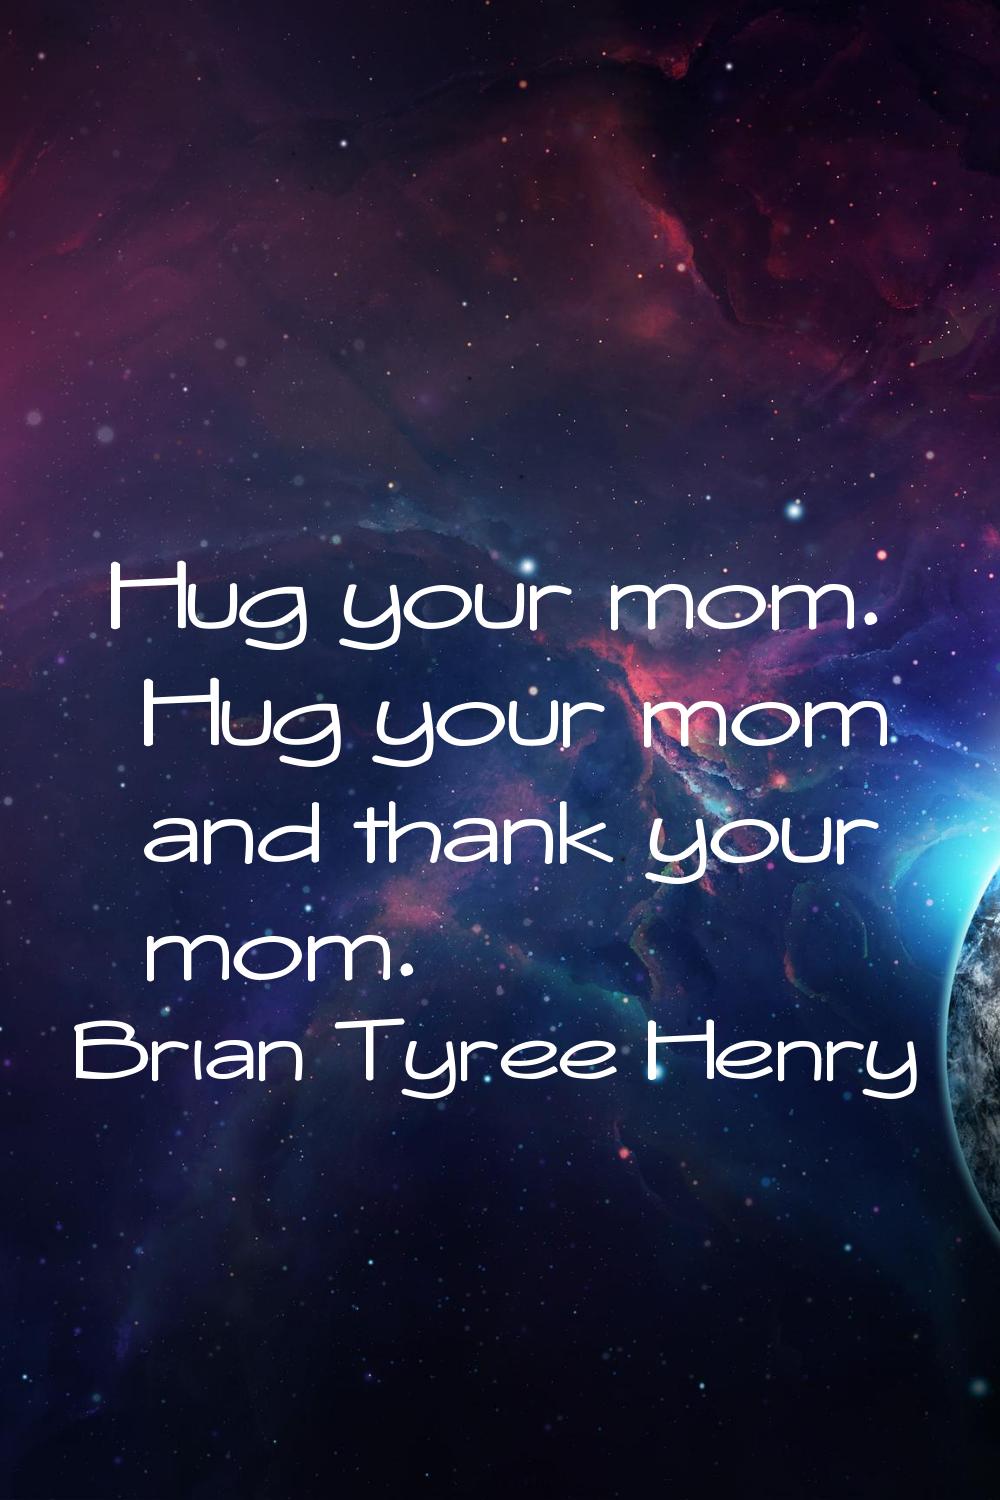 Hug your mom. Hug your mom and thank your mom.